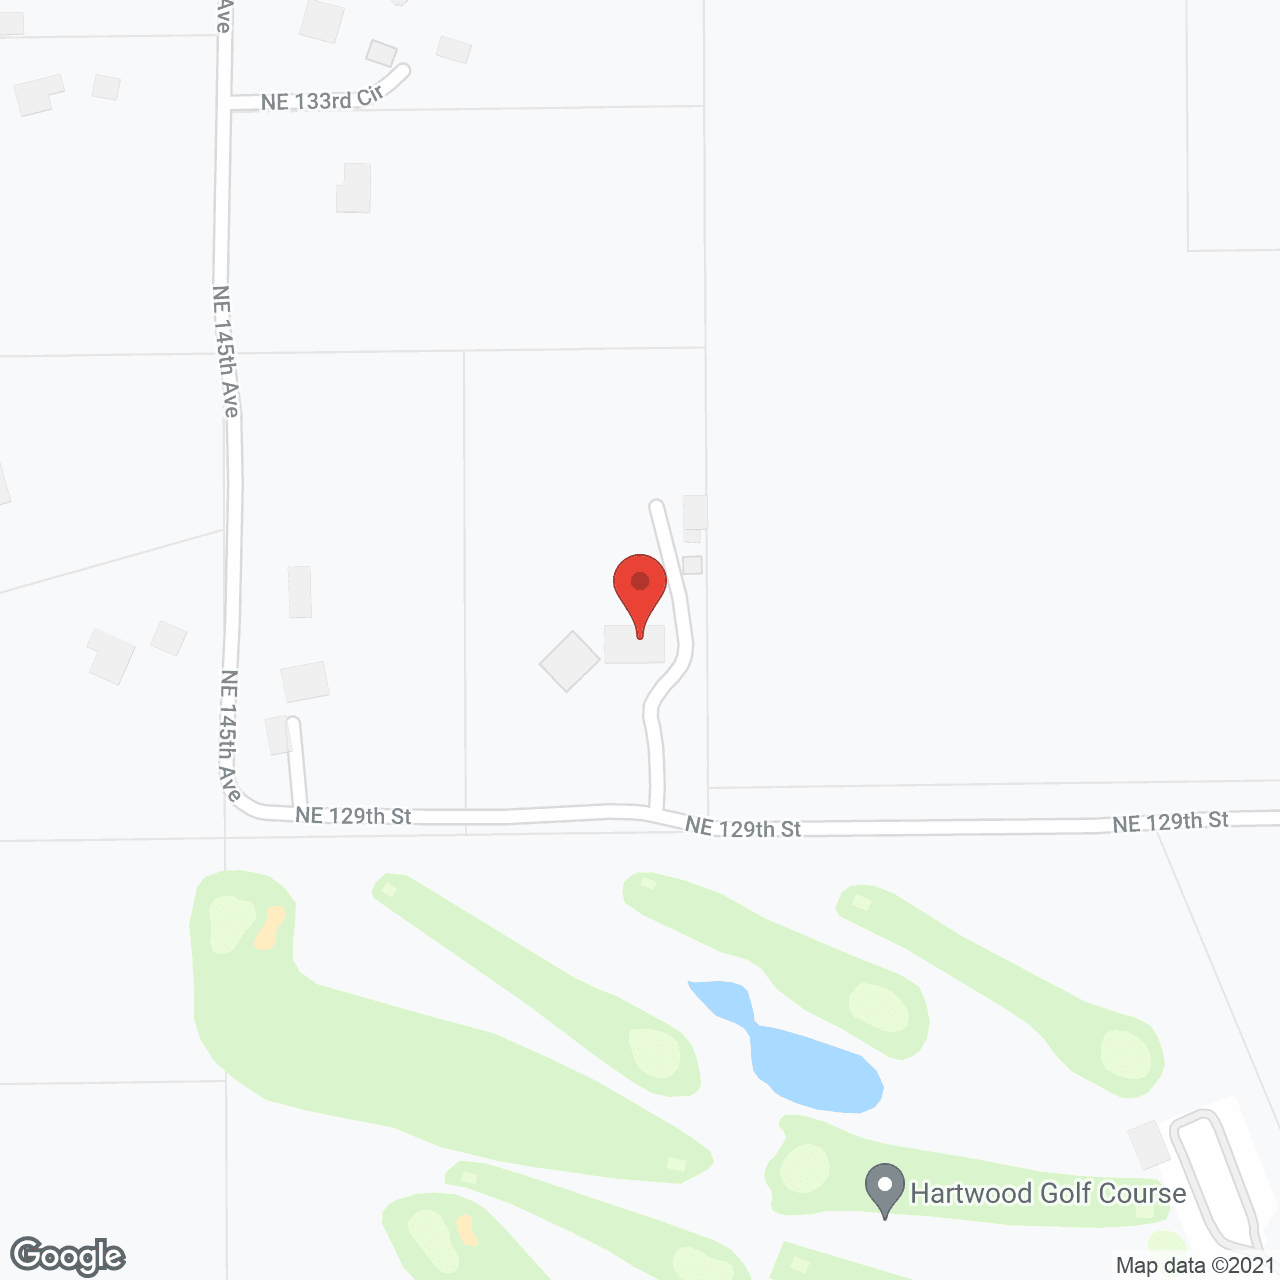 Advanced Senior Center in google map